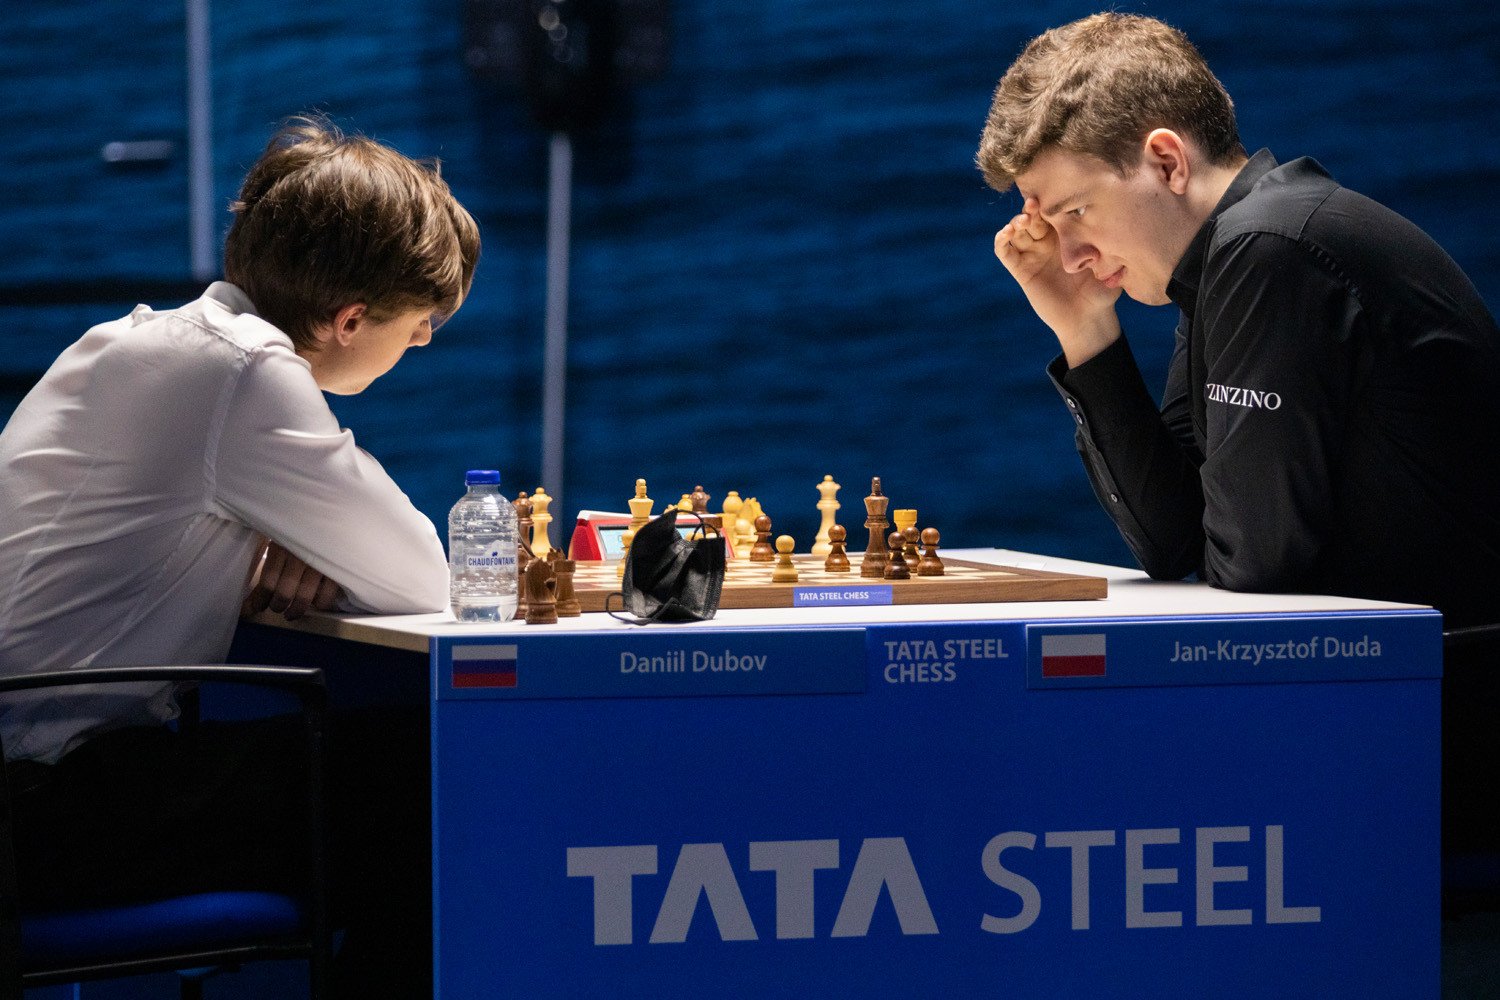 Tata Steel Chess 2023, Round 7